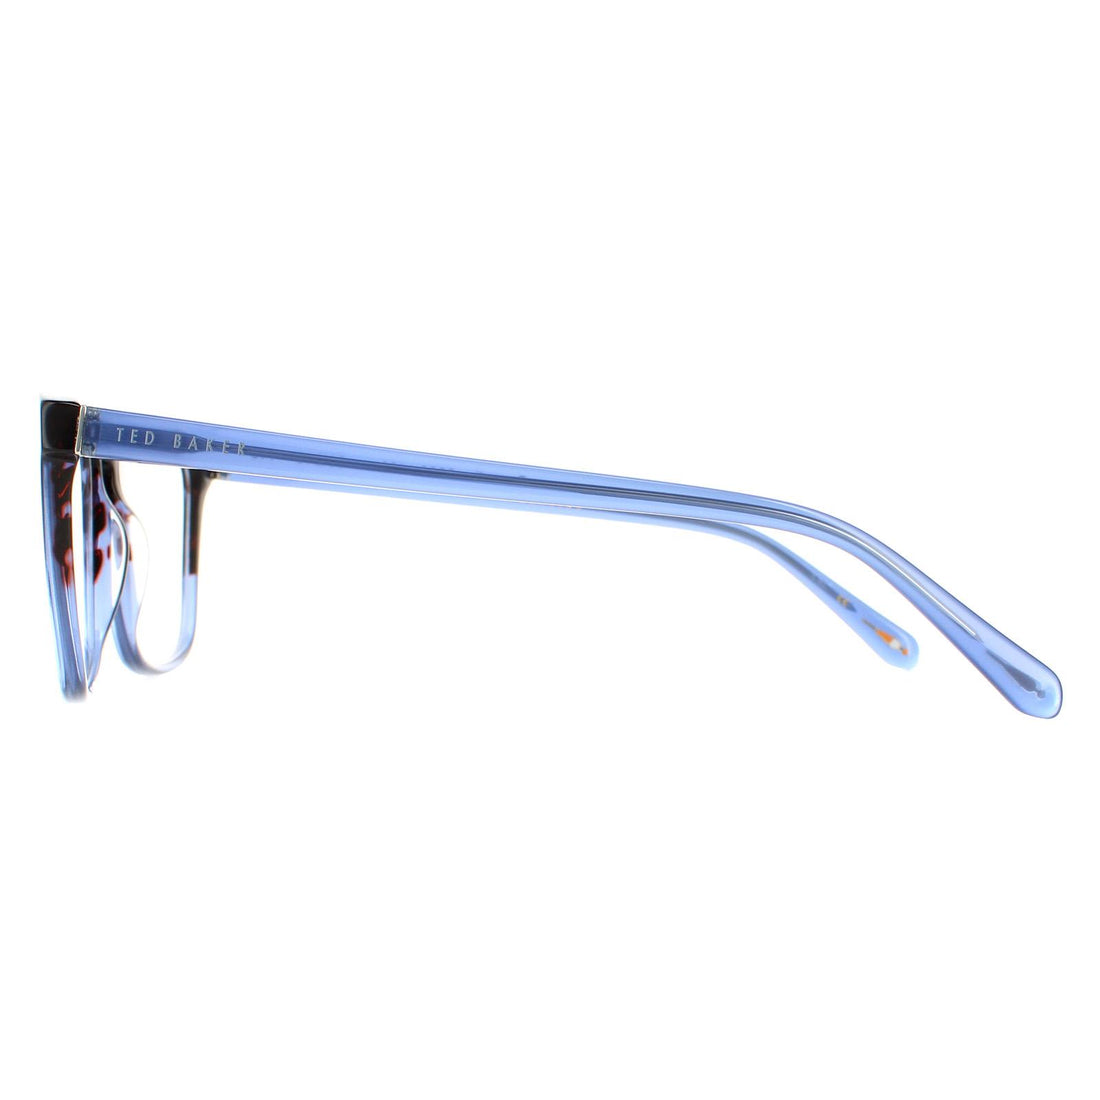 Ted Baker Glasses Frames TB8229 Cornell 160 Blue Men